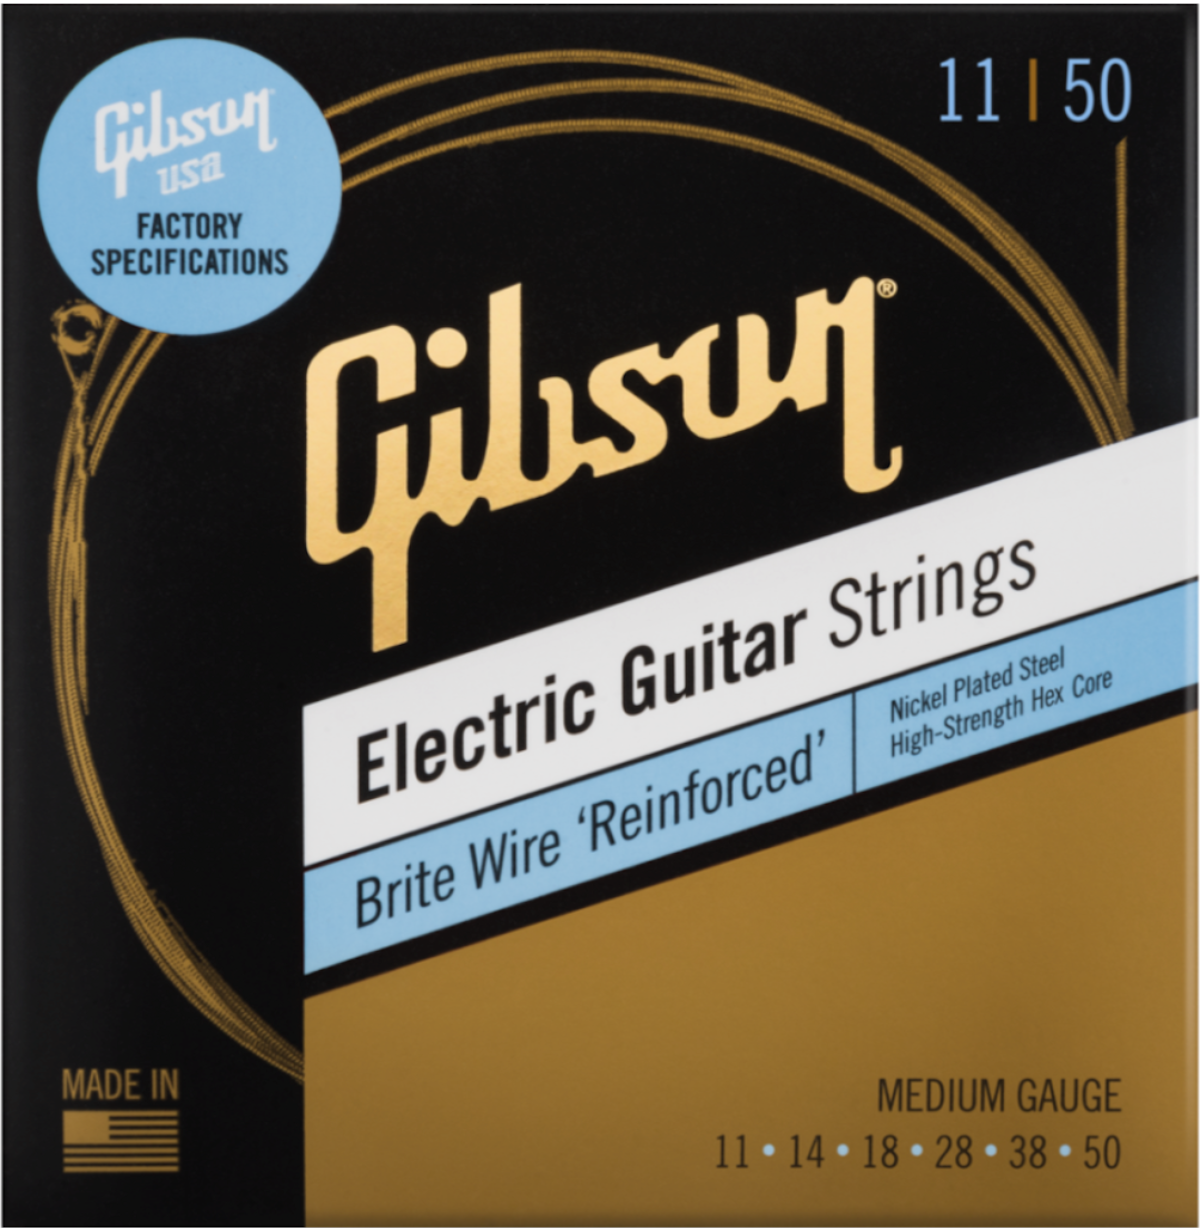 Gibson Brite Wire 'Reinforced' gitarstrenger